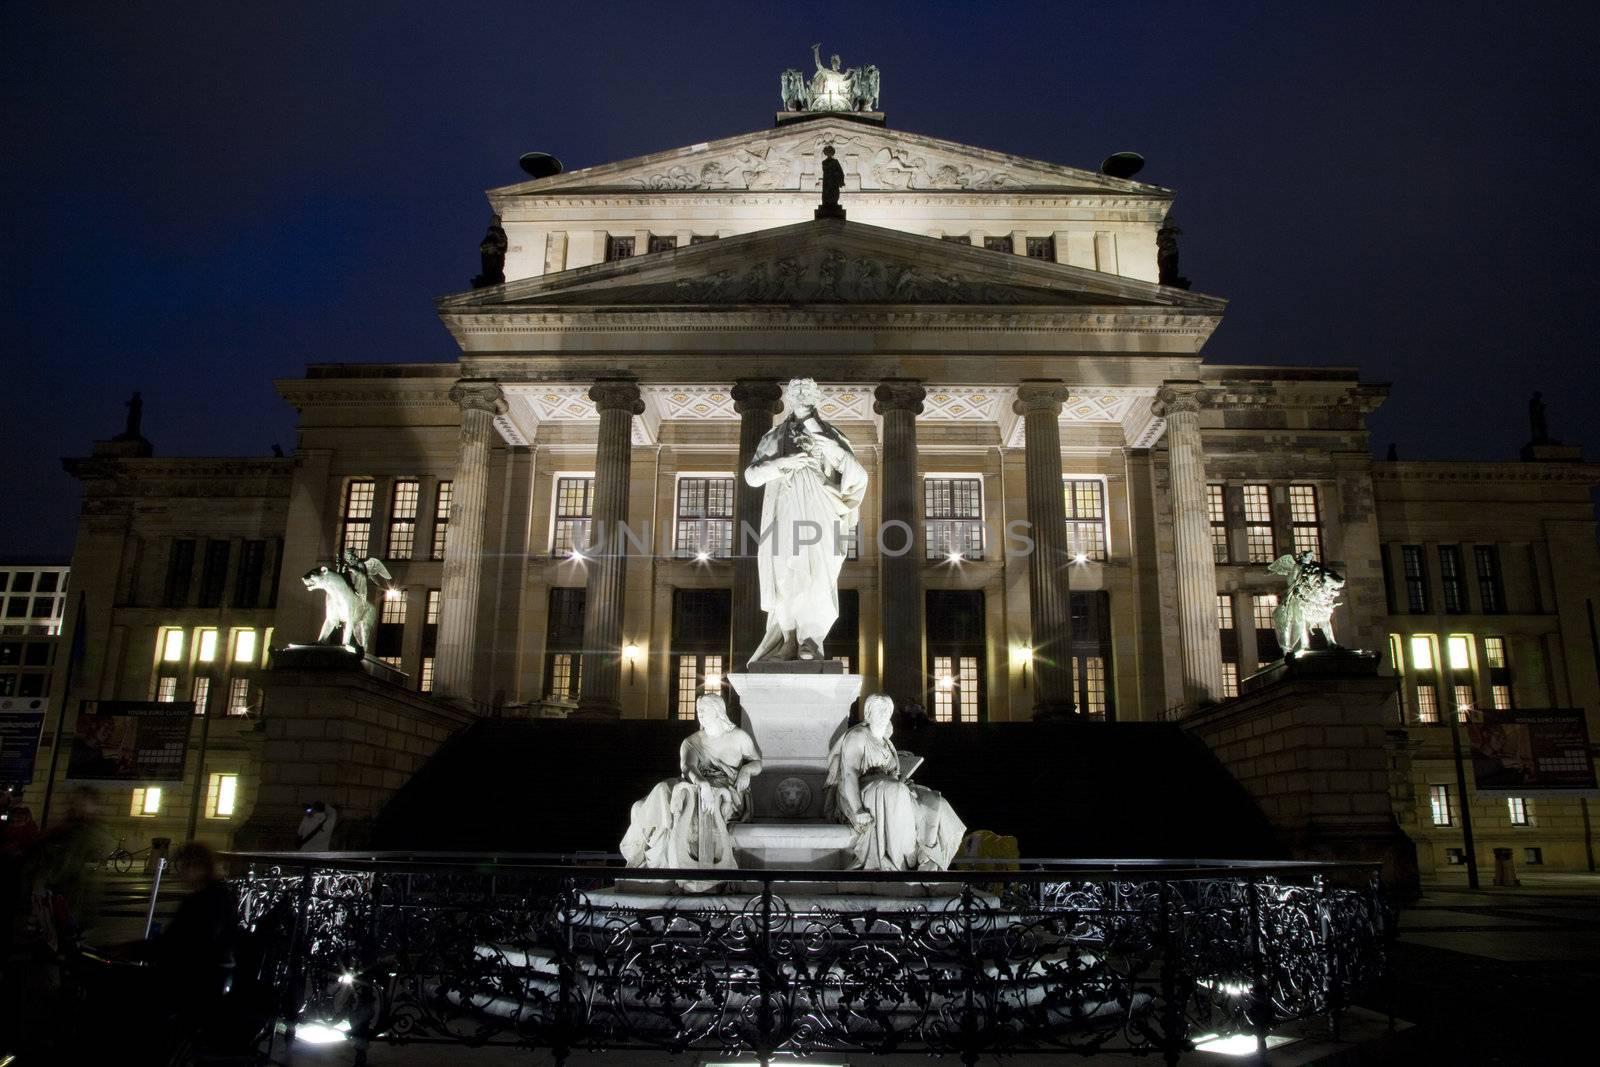 Konzerthaus and Friedrich Schiller Statue - Berlin by chrisdorney